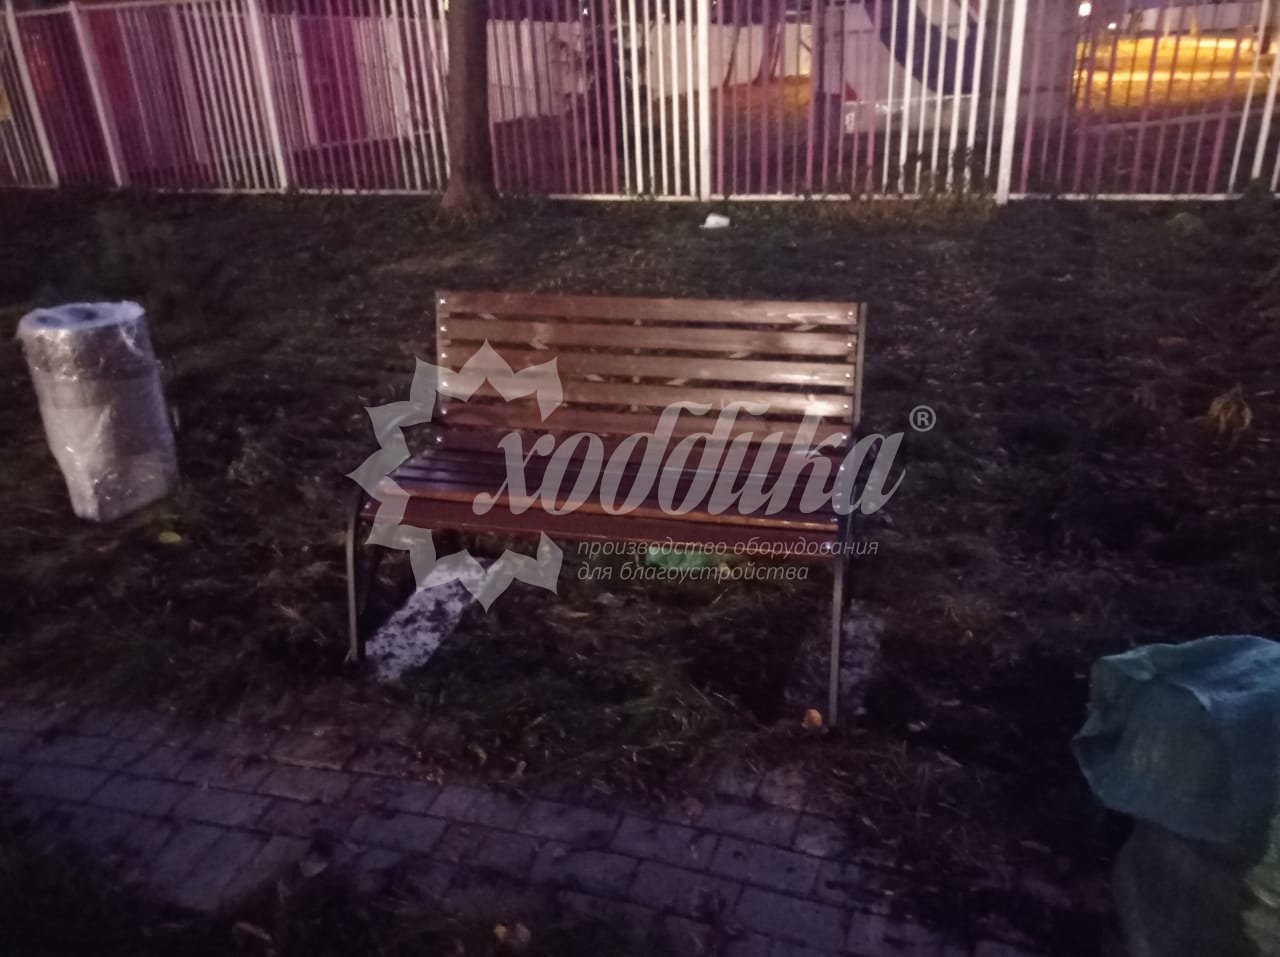 Скамейки вокруг дерева, дачные комплекты и многое другое на улицах Москвы и на загородных участках - 22